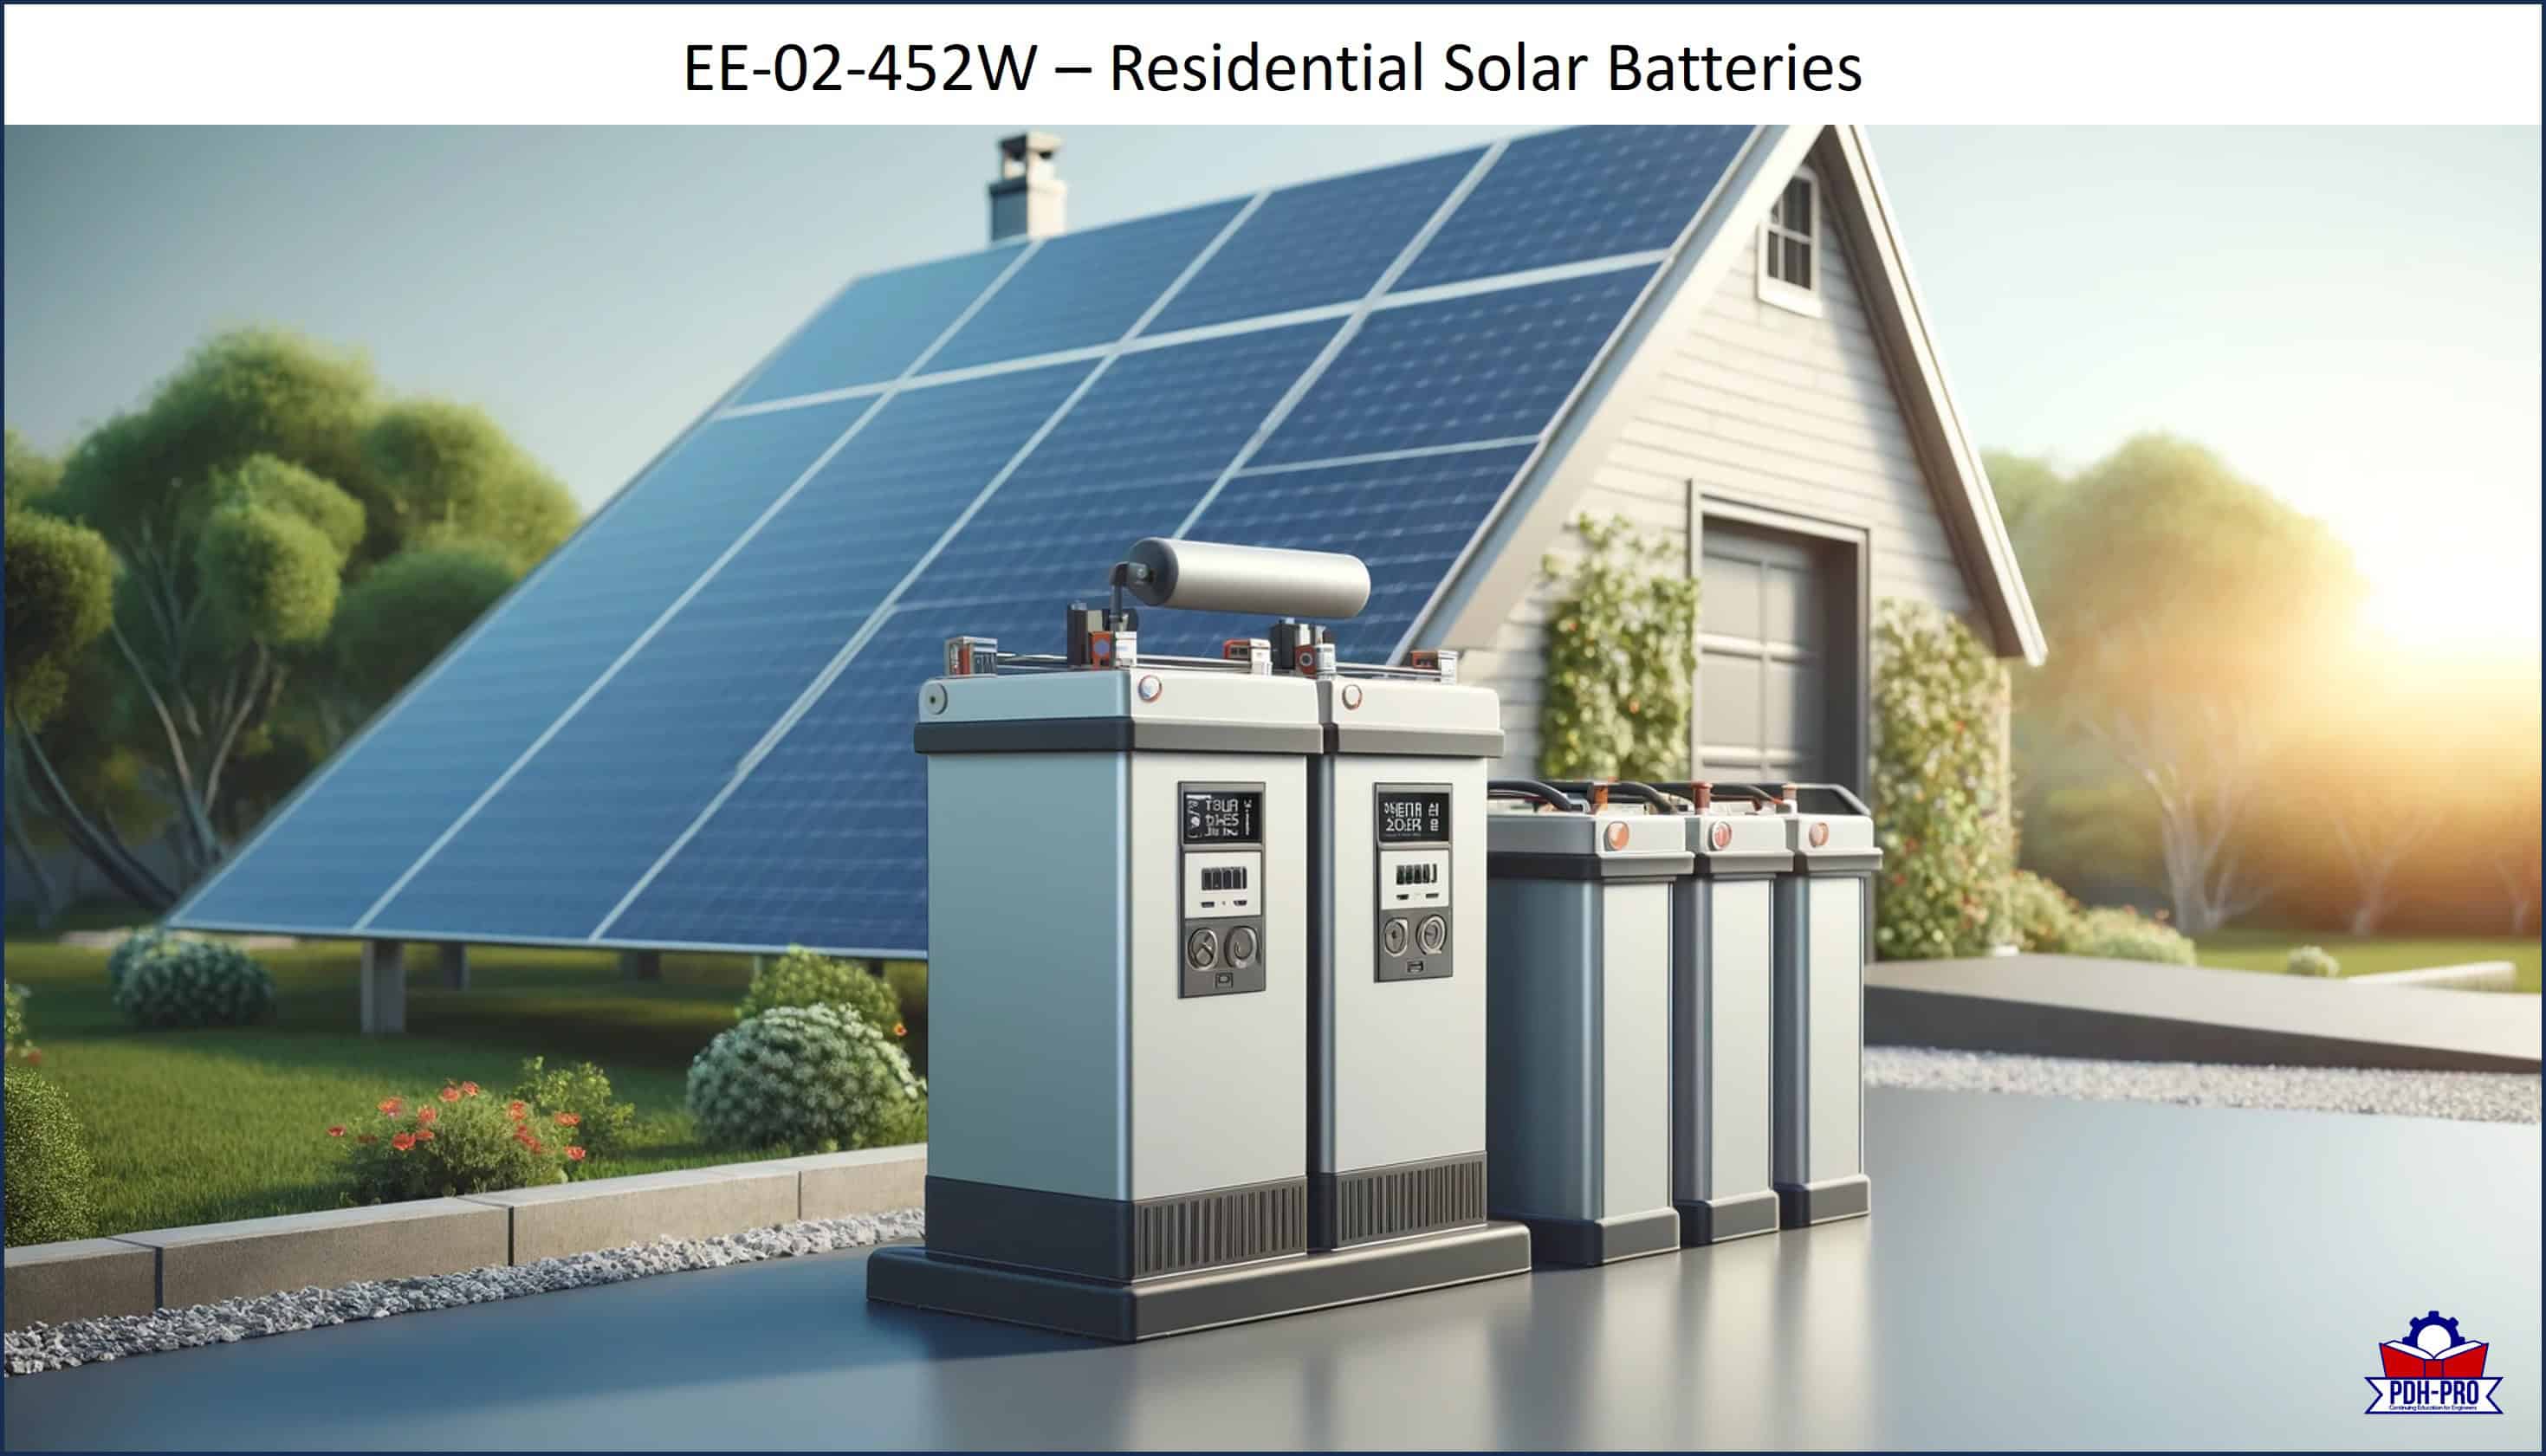 Residential Solar Batteries